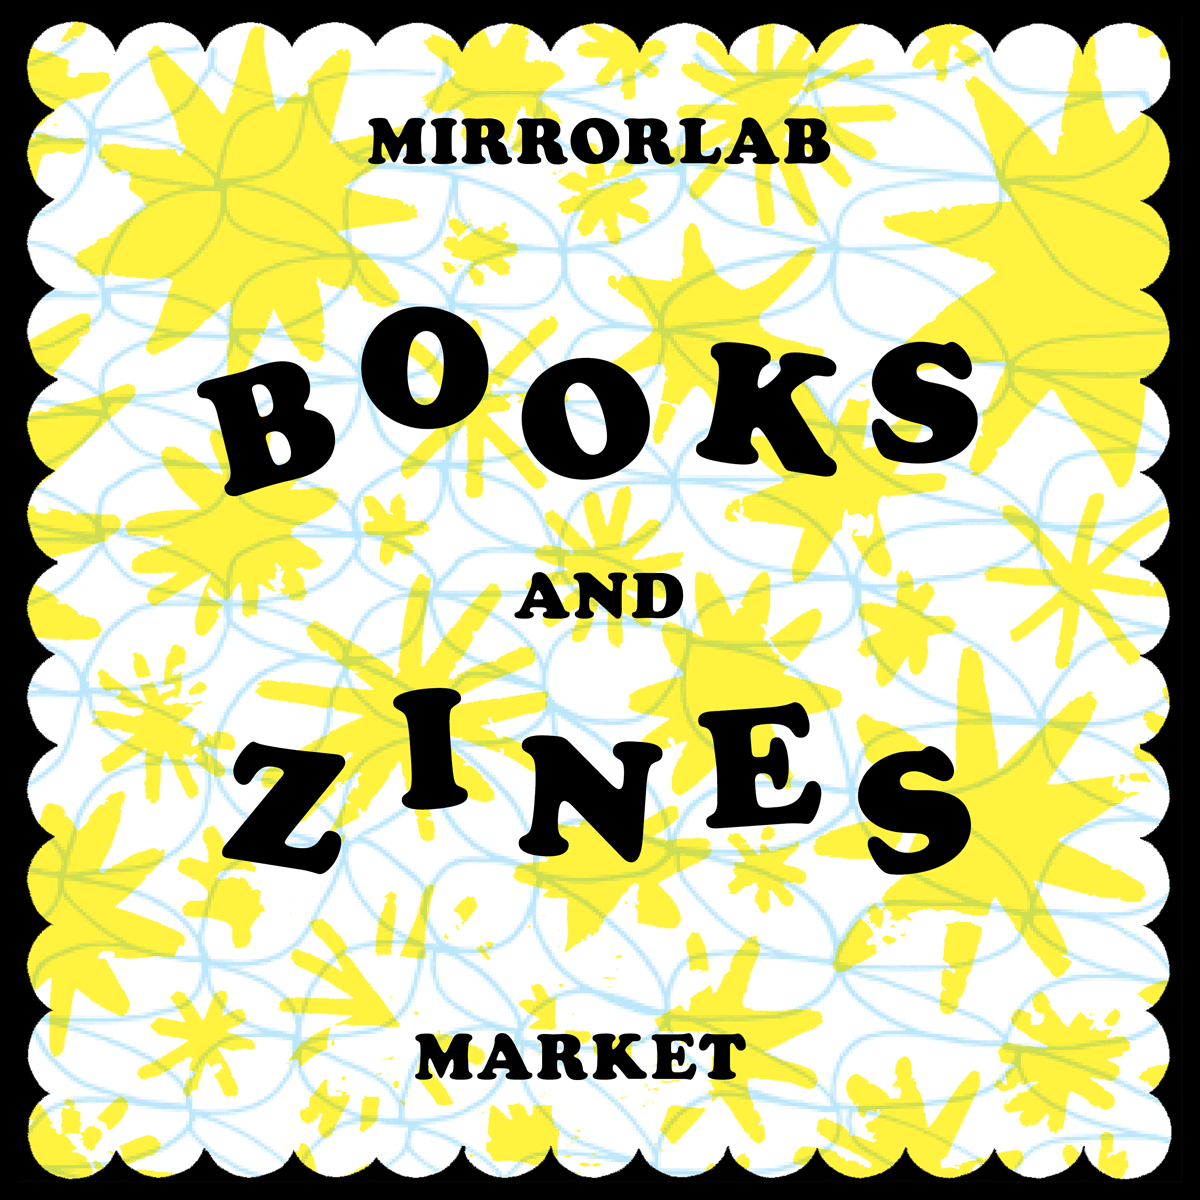 MirrorLab, Books and Zines Market